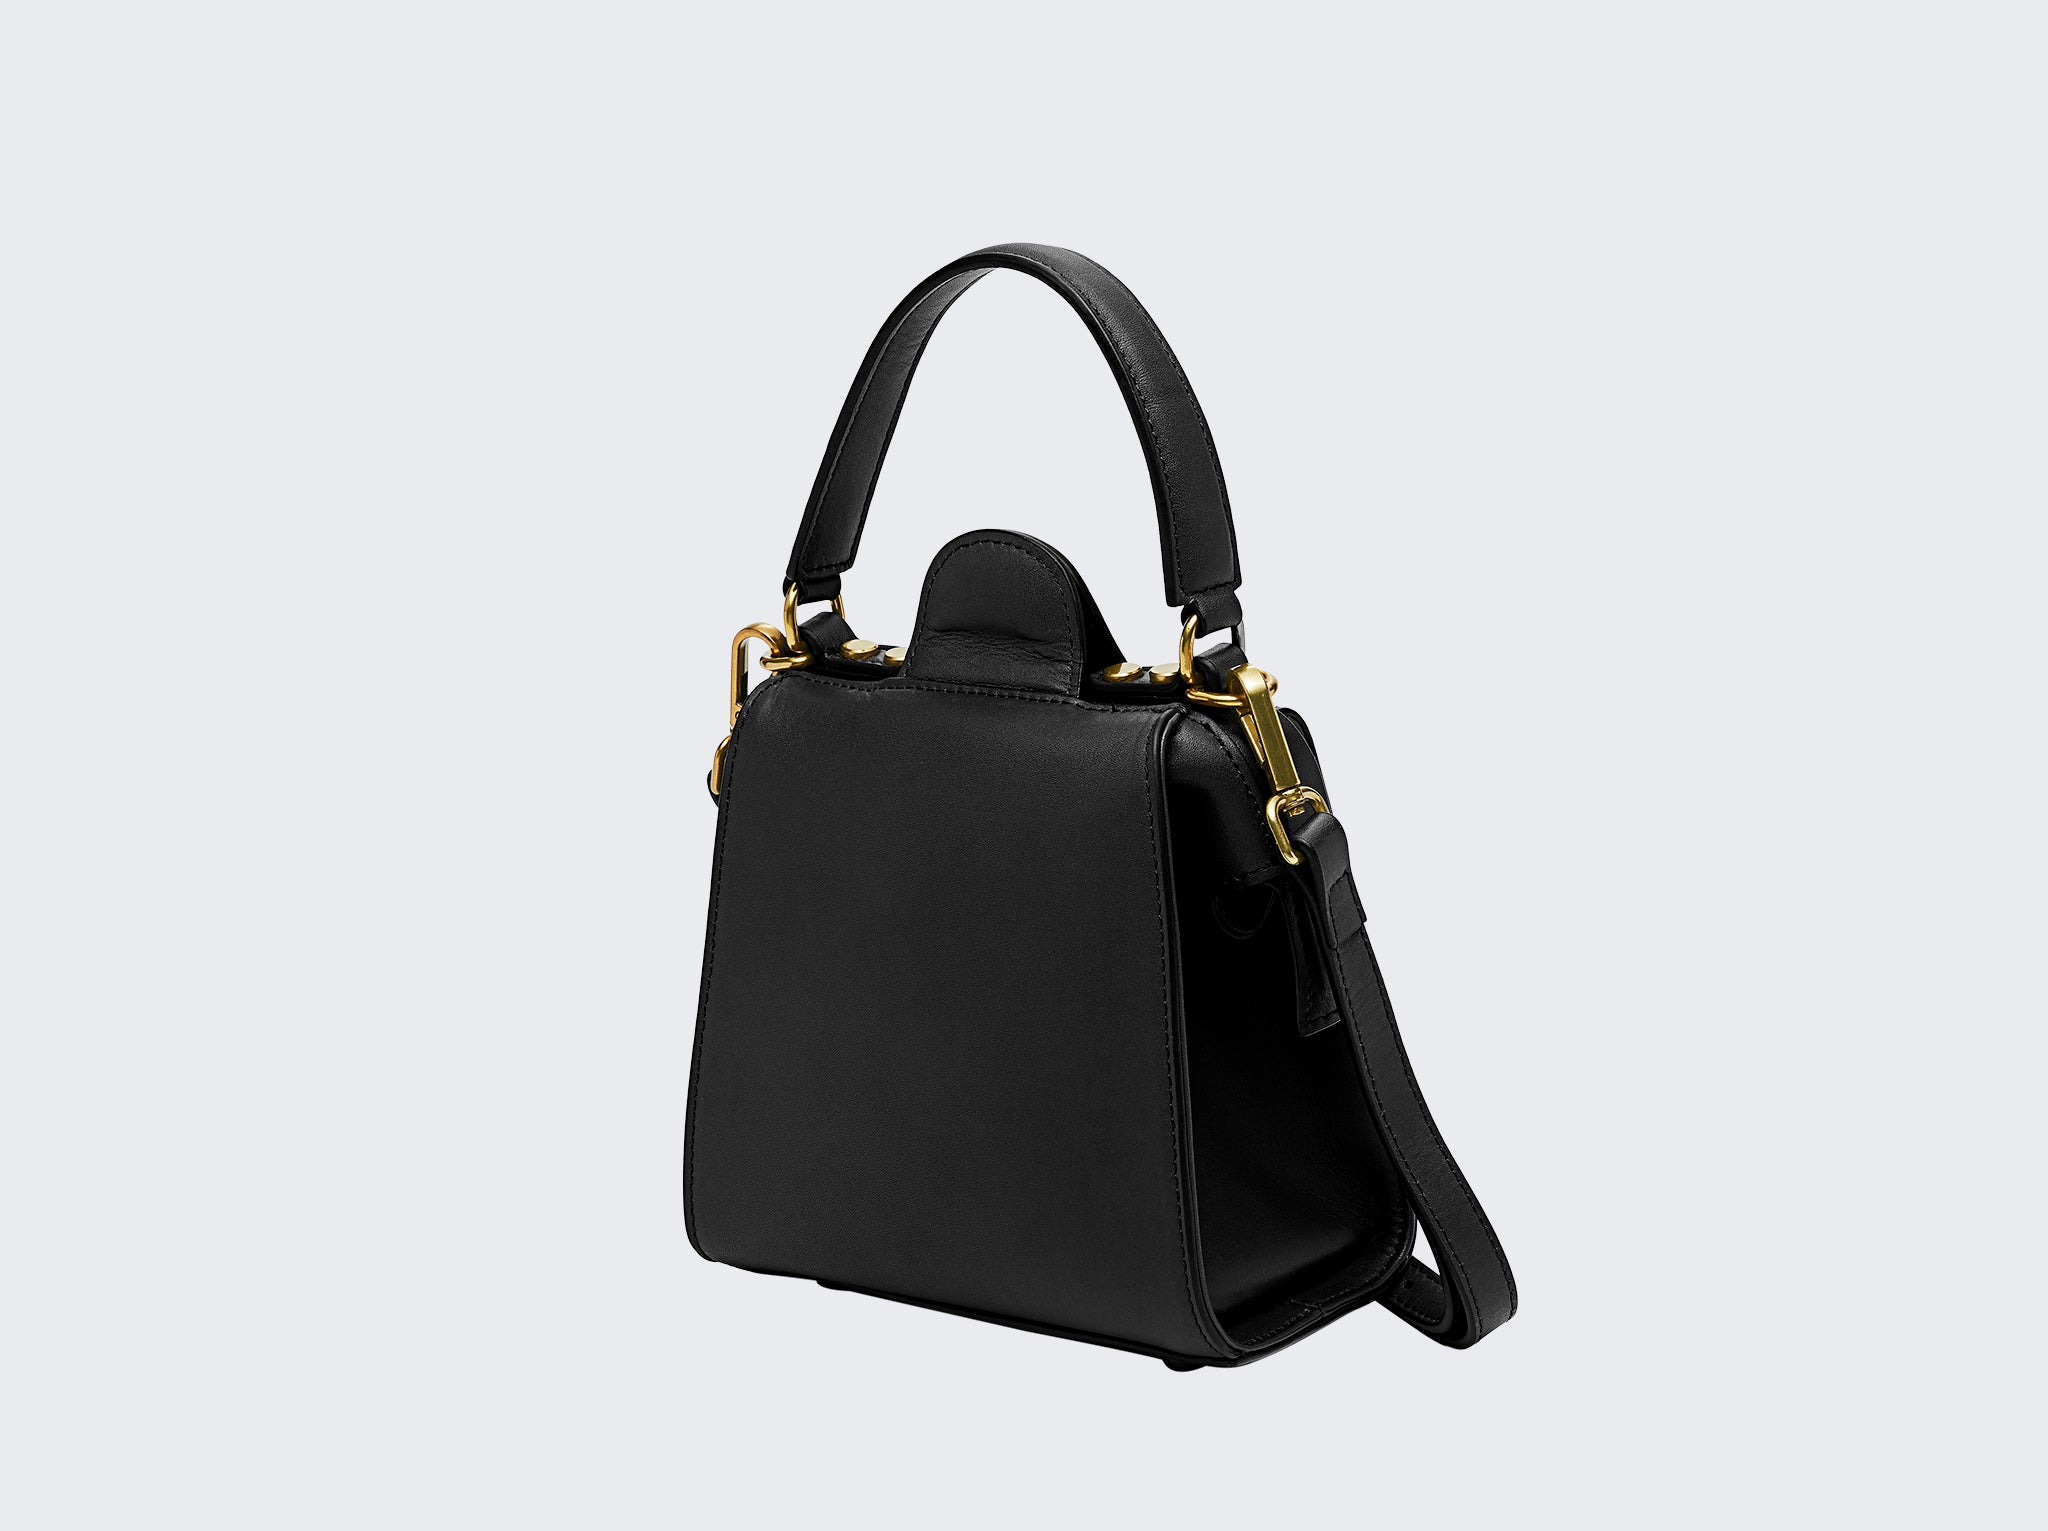 The Elise Noir Structured Shoulder Bag